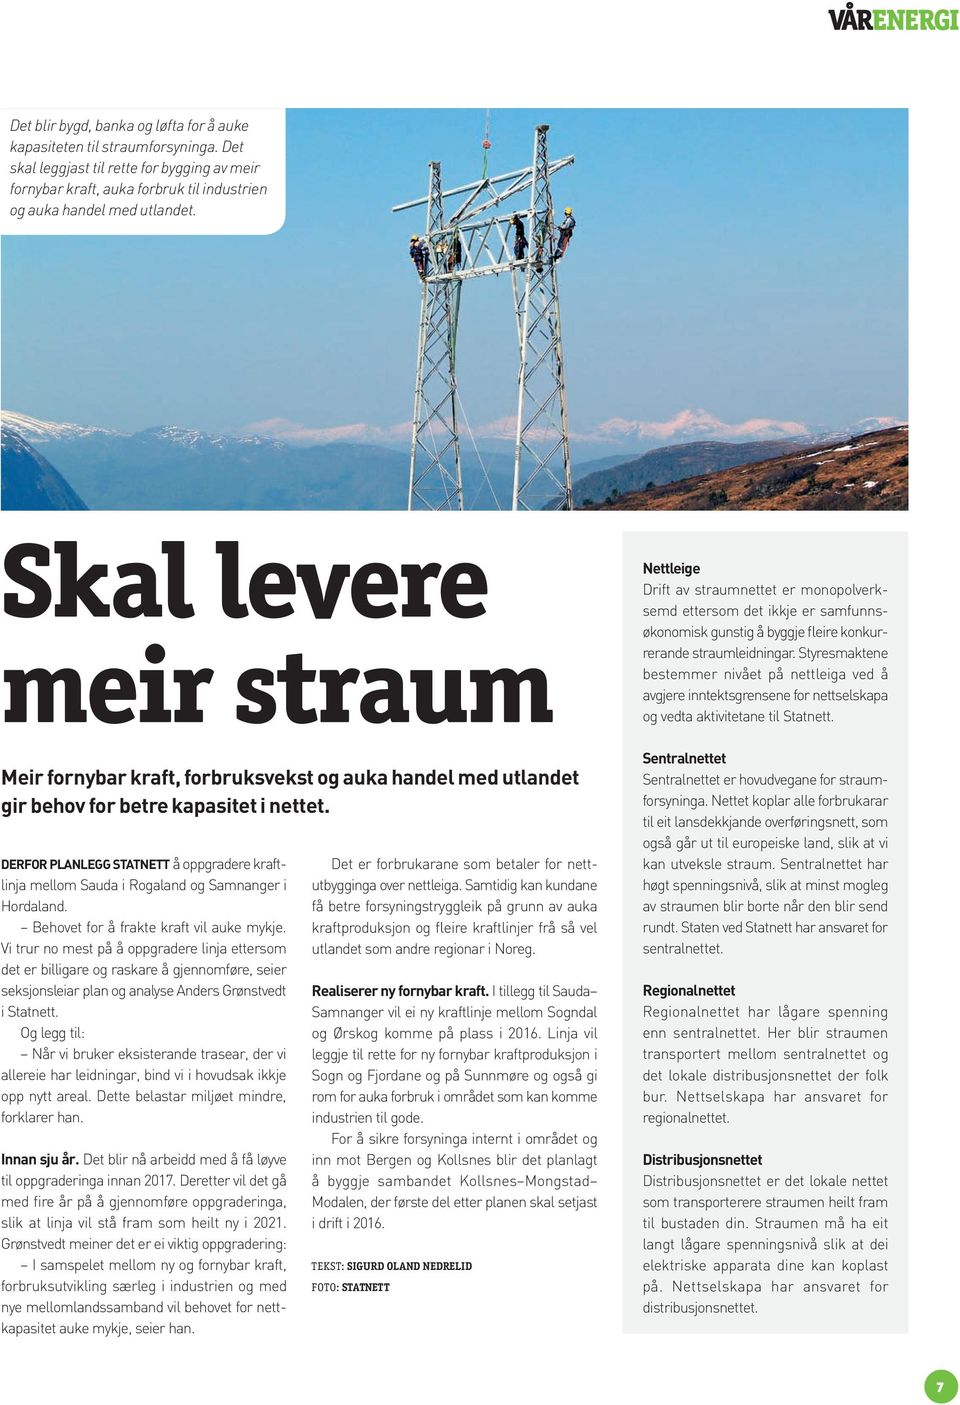 DERFOR PLANLEGG STATNETT å oppgradere kraftlinja mellom Sauda i Rogaland og Samnanger i Hordaland. Behovet for å frakte kraft vil auke mykje.